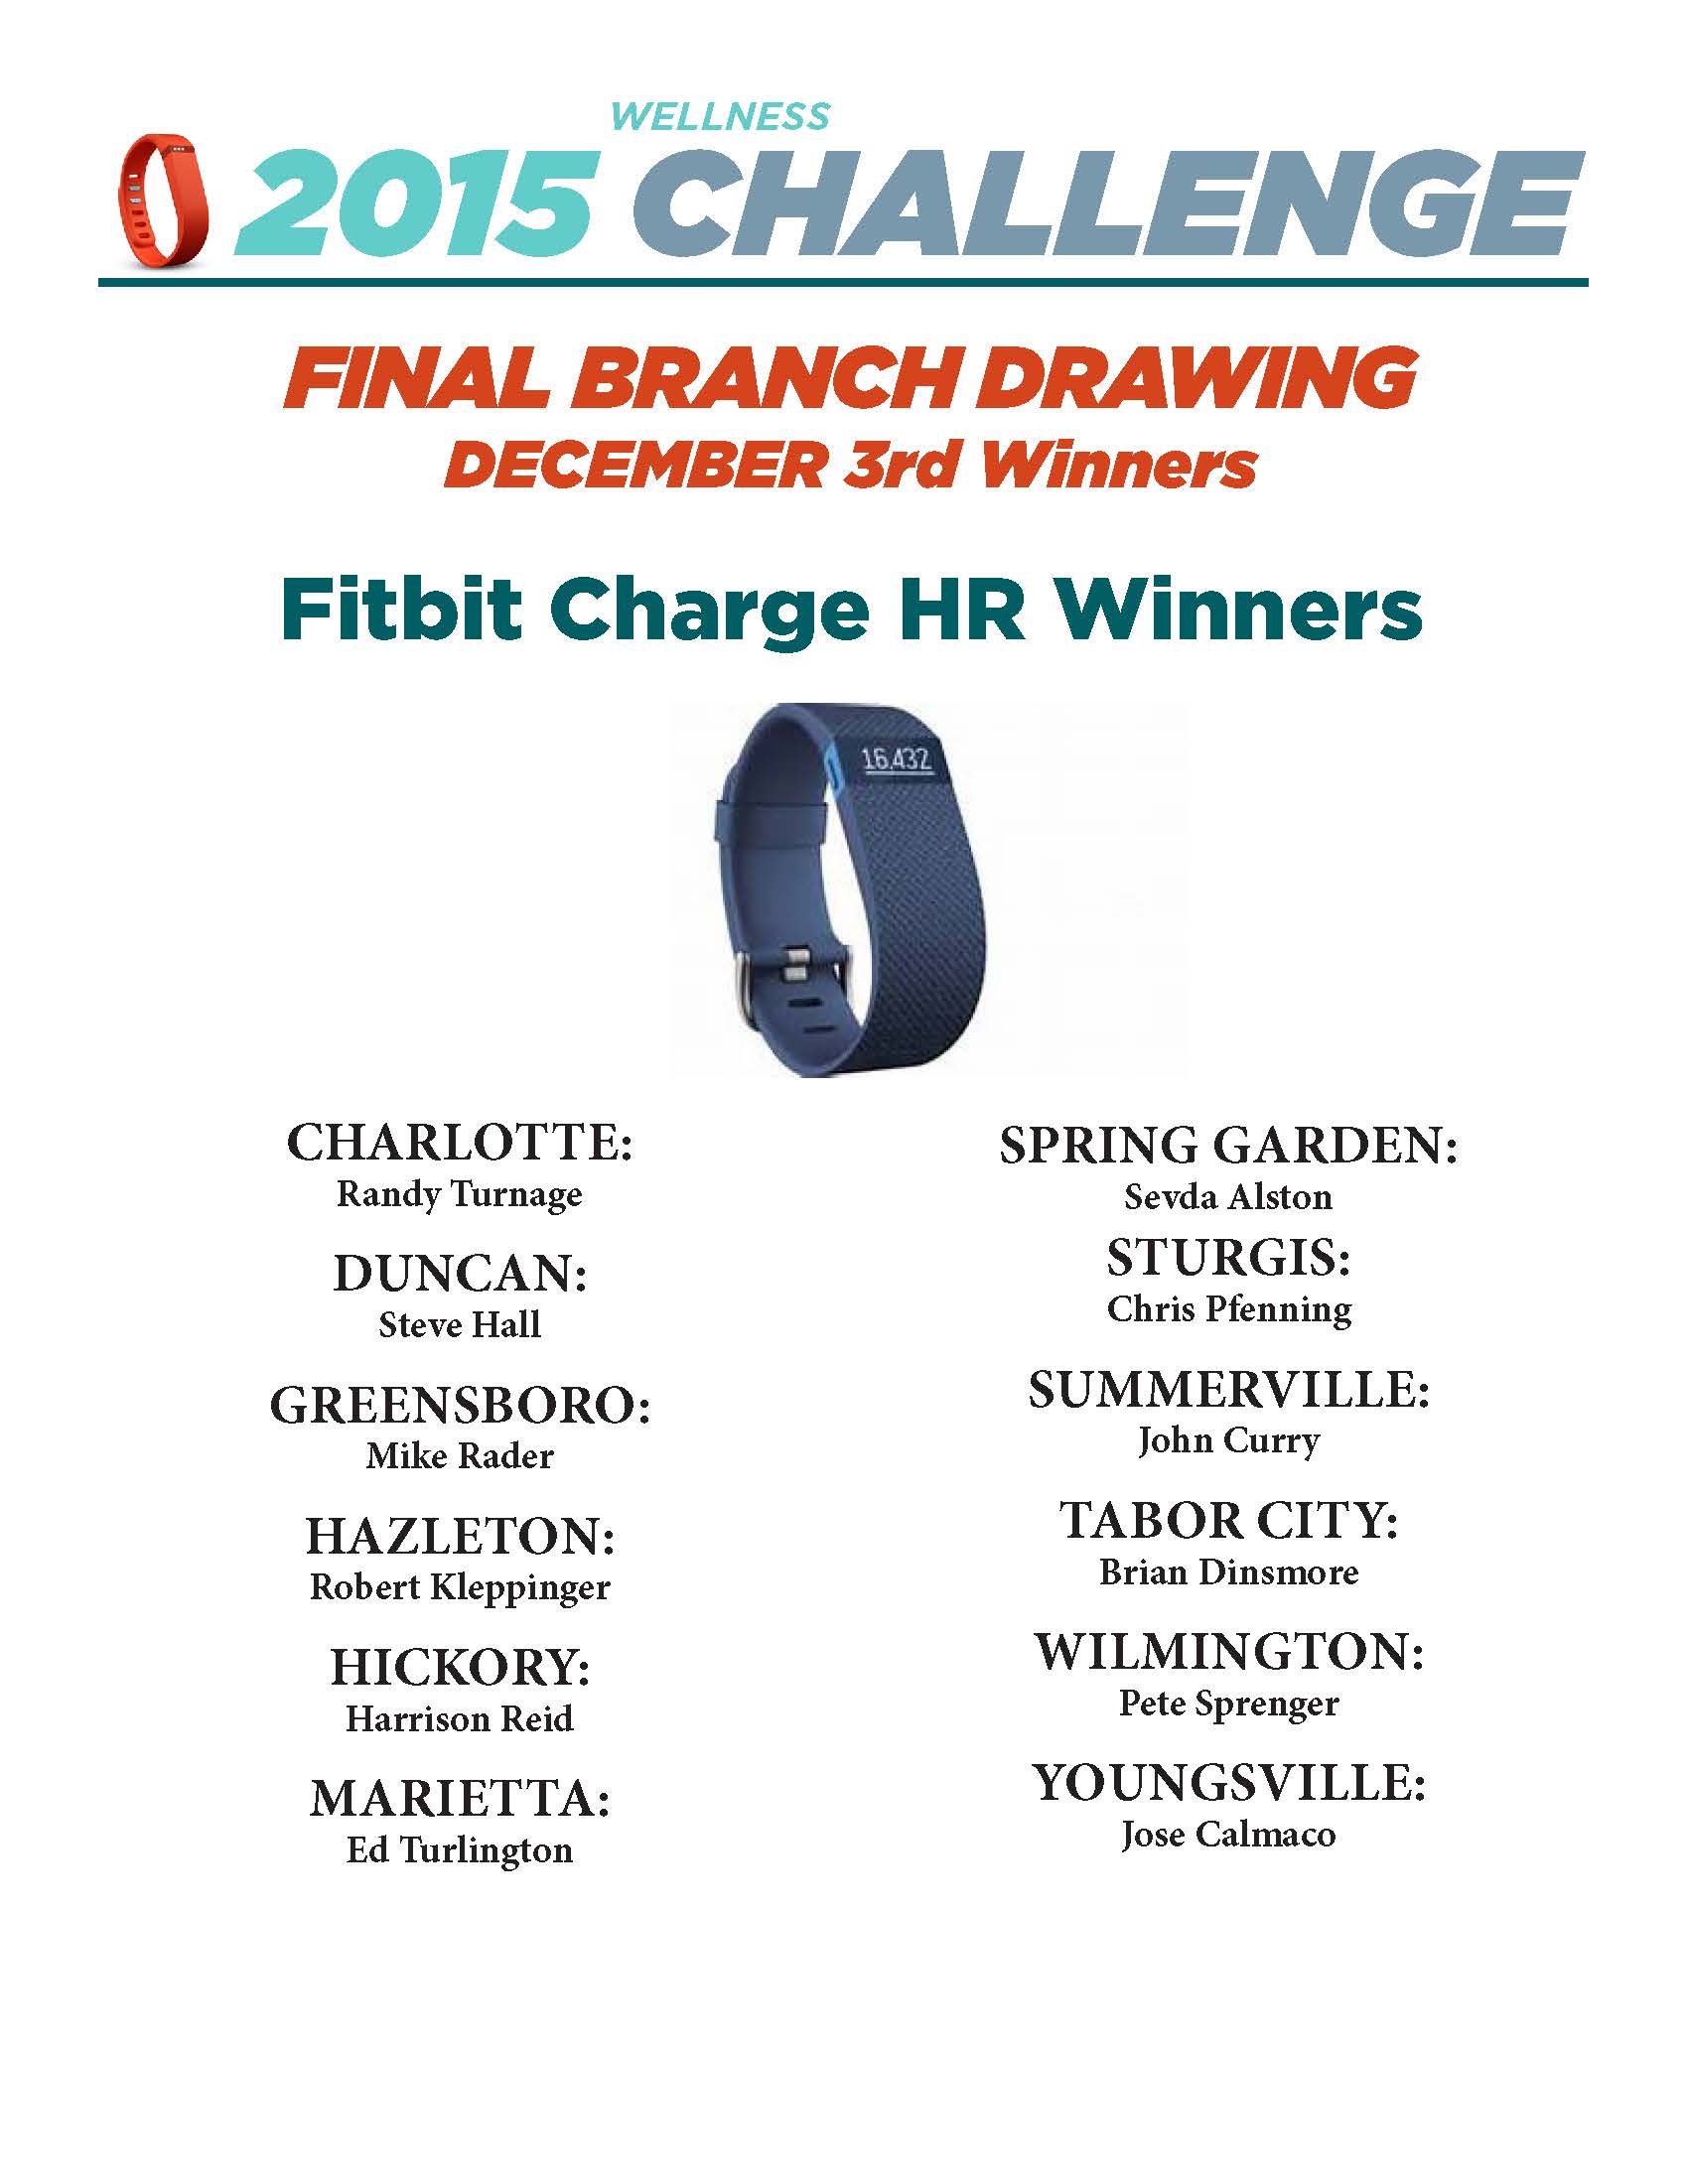 Final Branch Drawing Winners